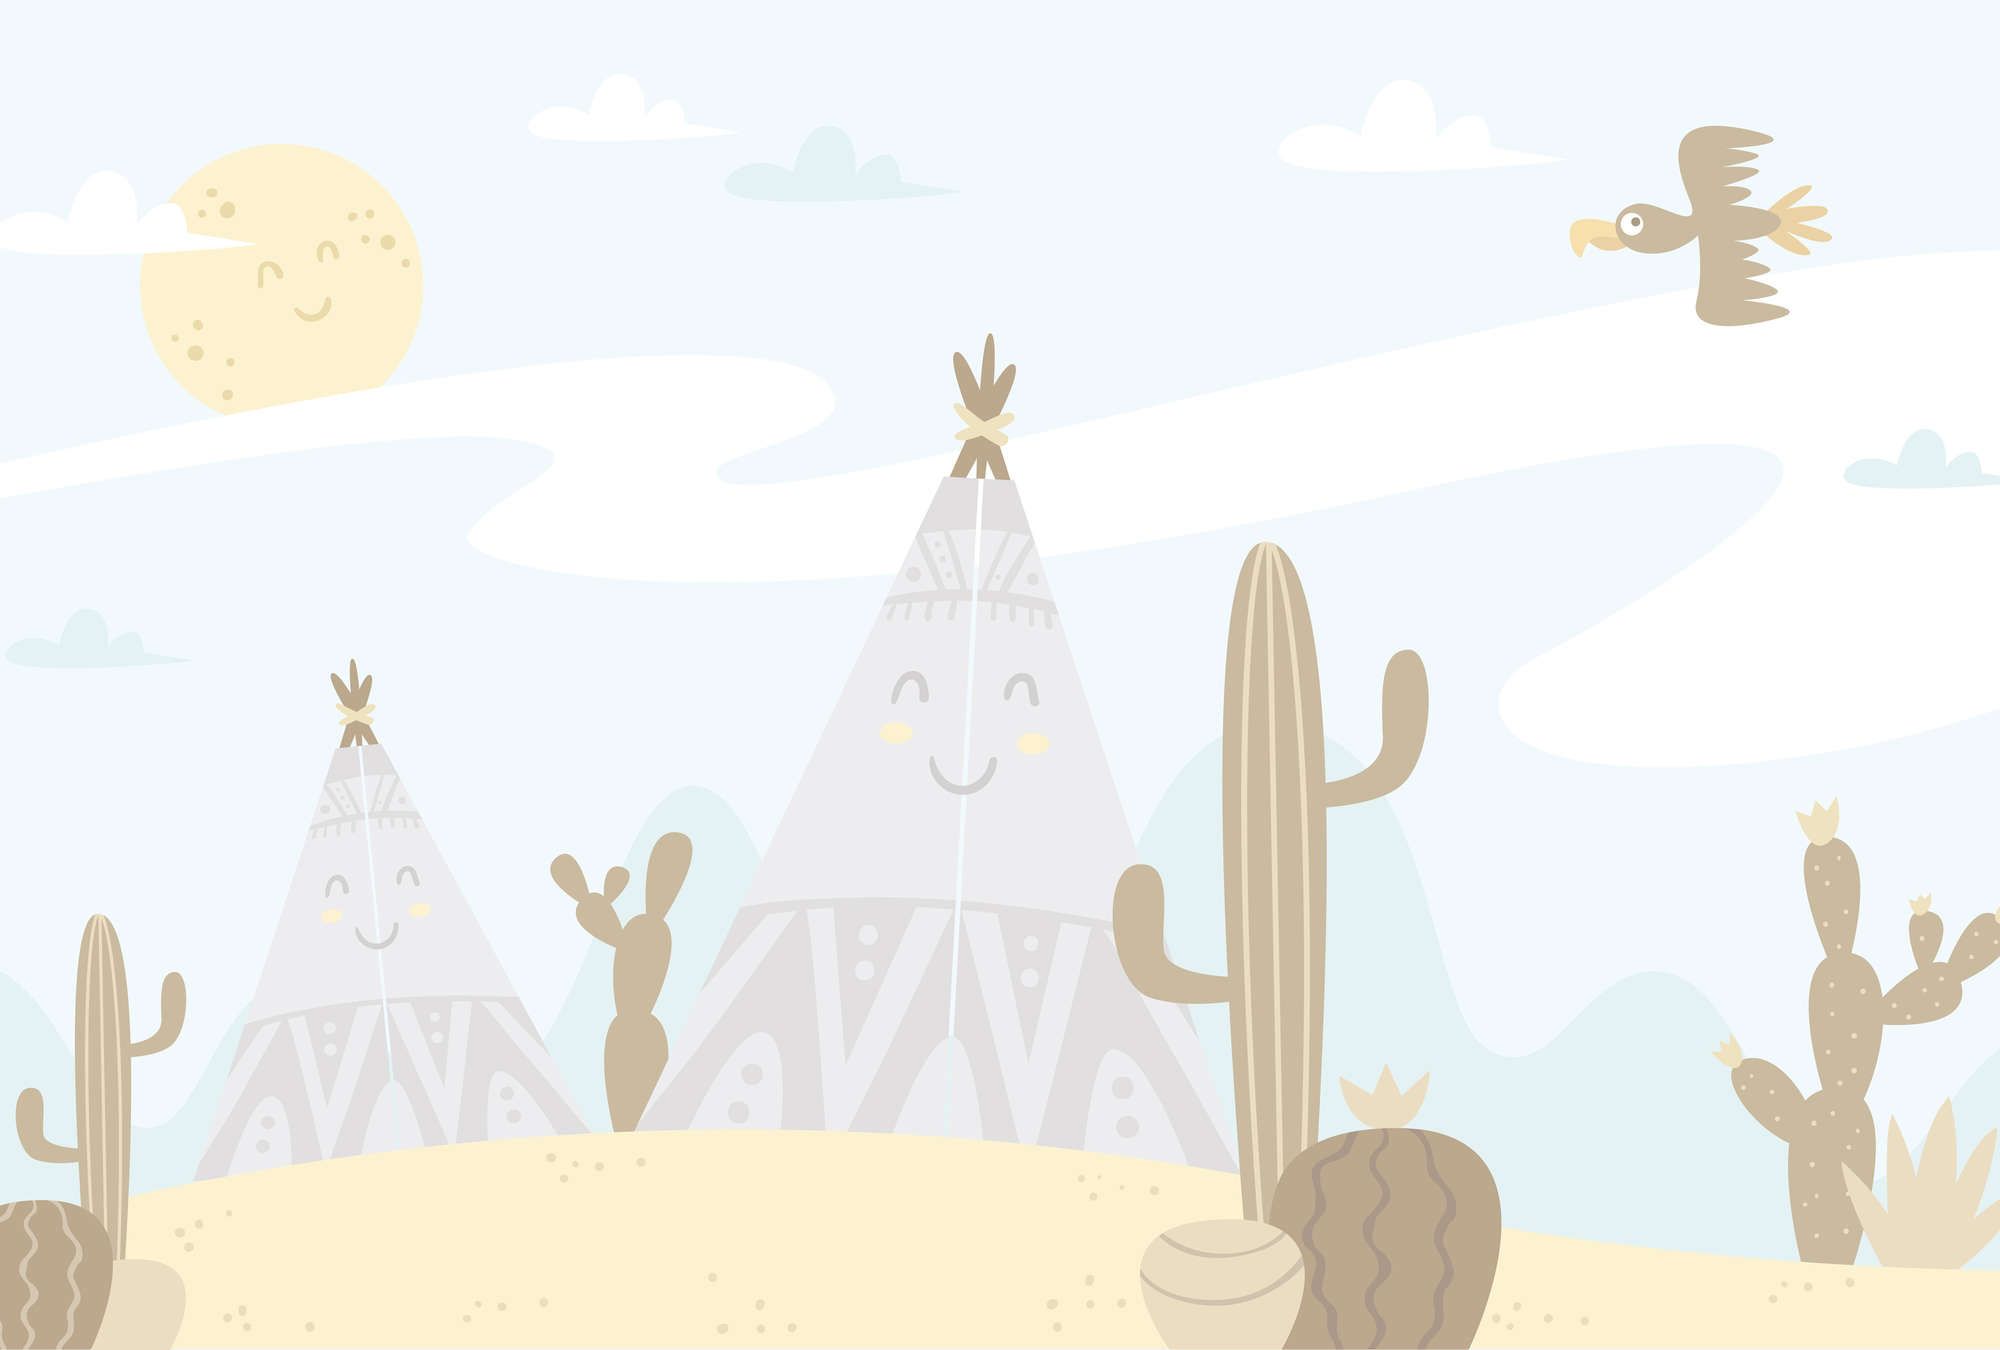             Fototapete Wüstenlandschaft mit Tipis – Glattes & leicht glänzendes Vlies
        